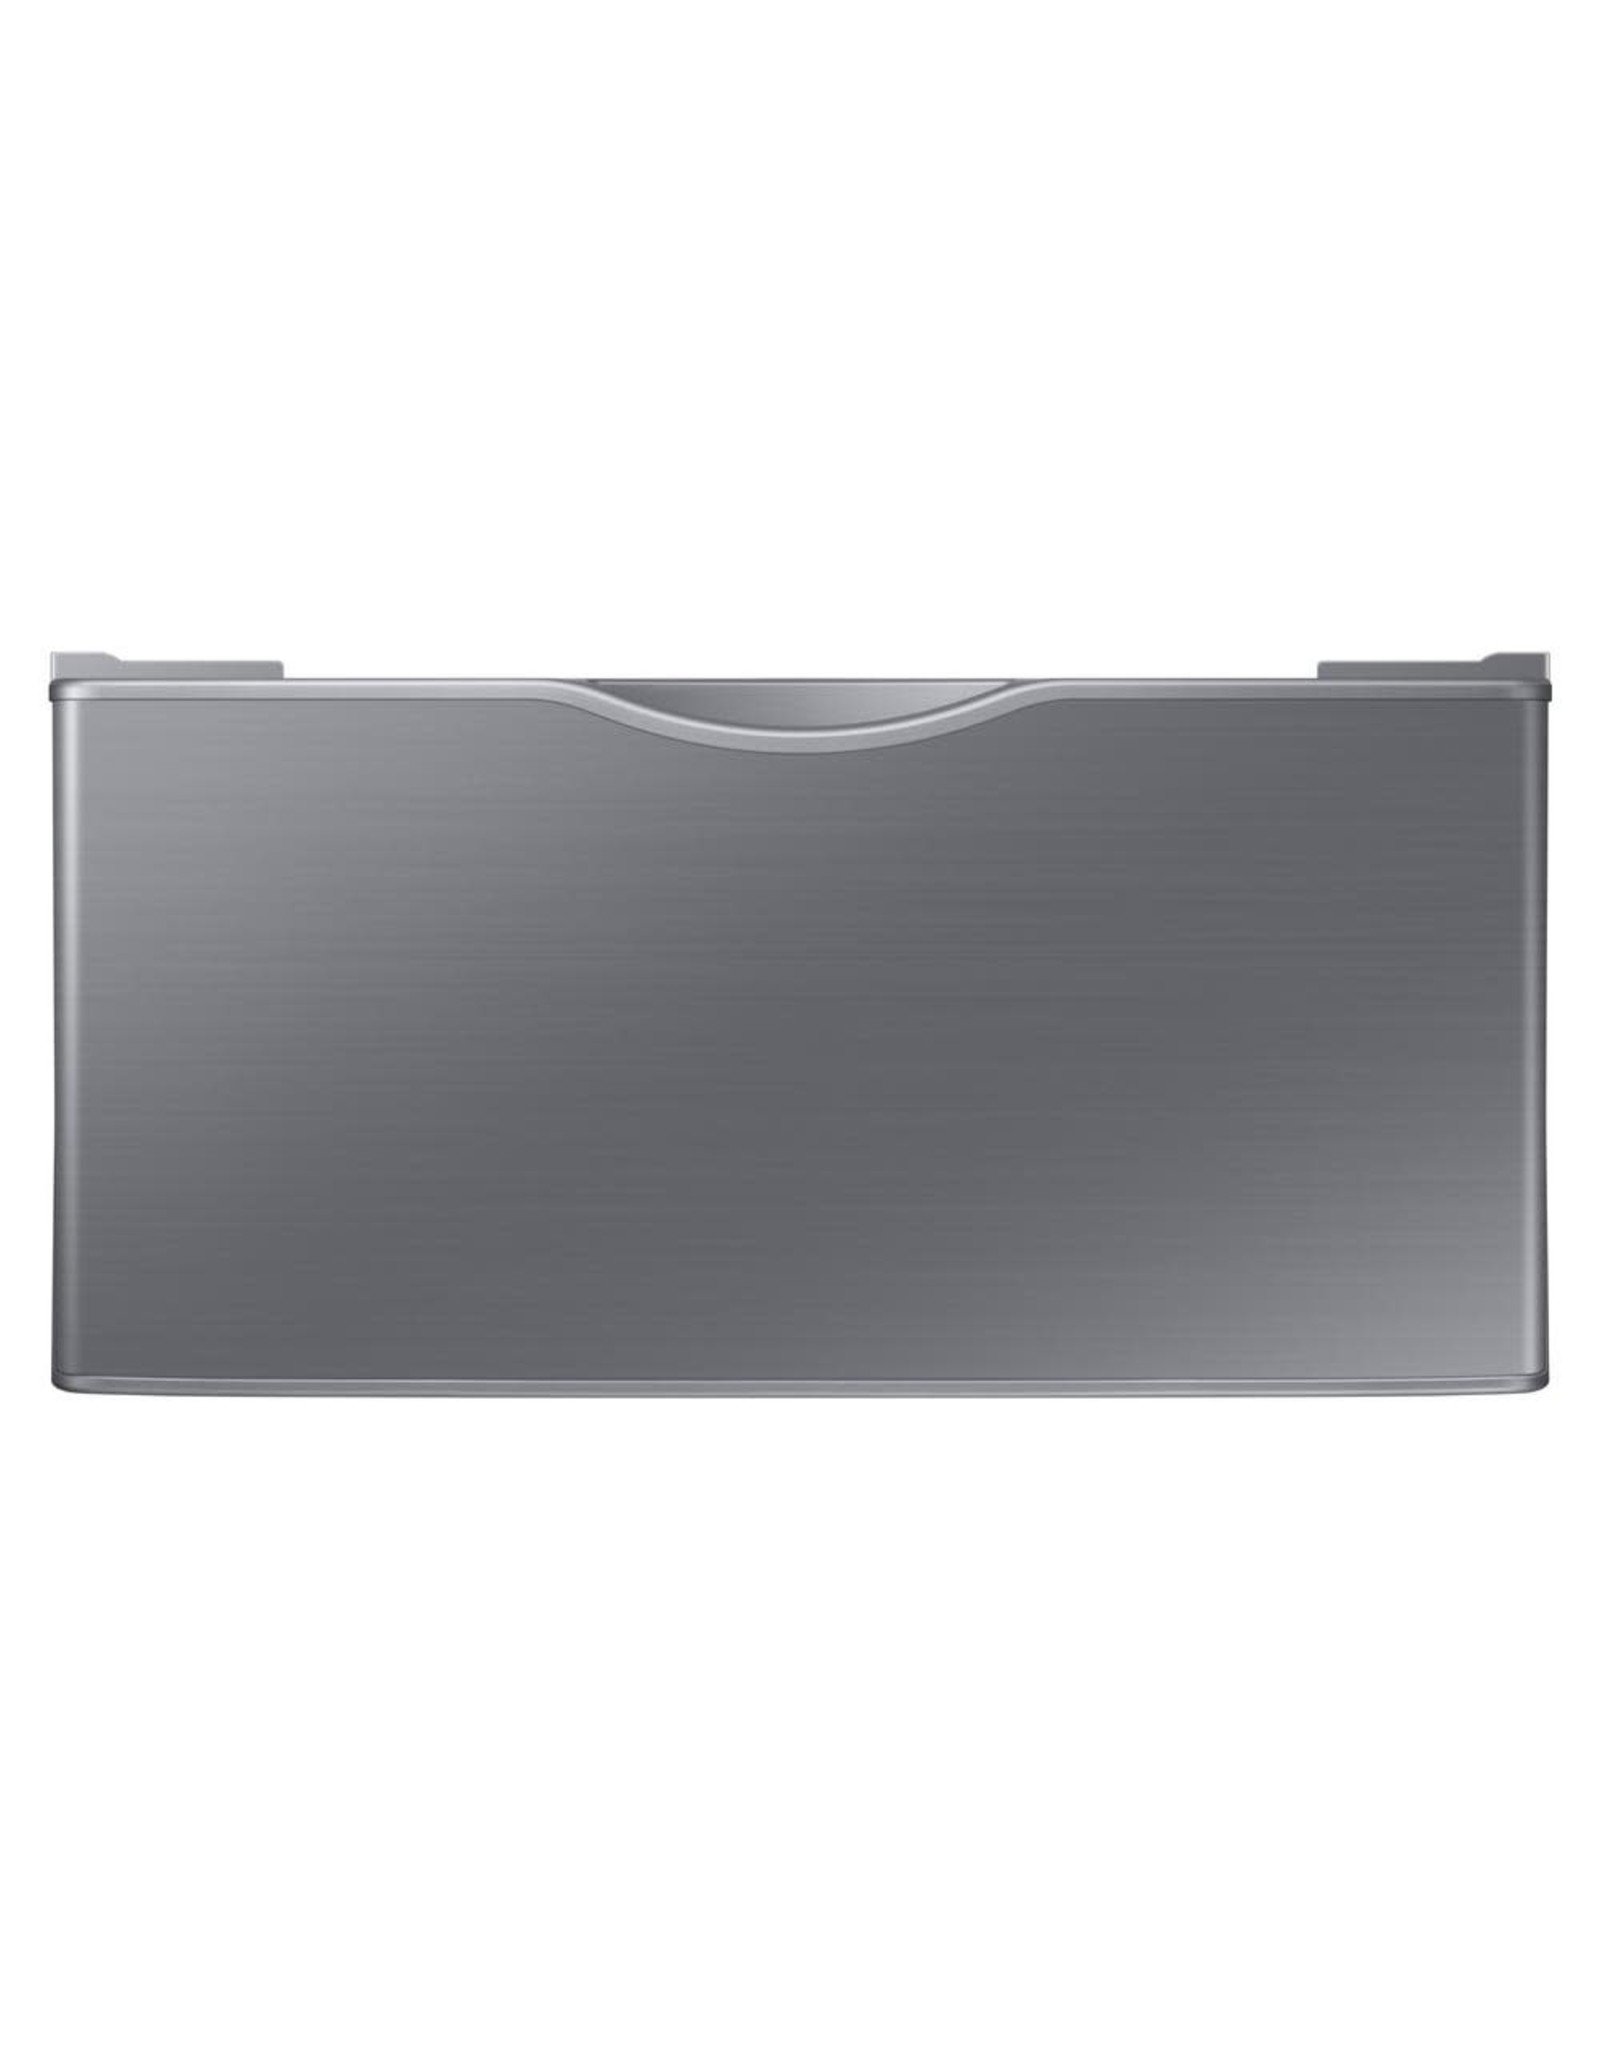 SAMSUNG WE402NP Samsung 14.2 in. Platinum Laundry Pedestal with Storage Drawer